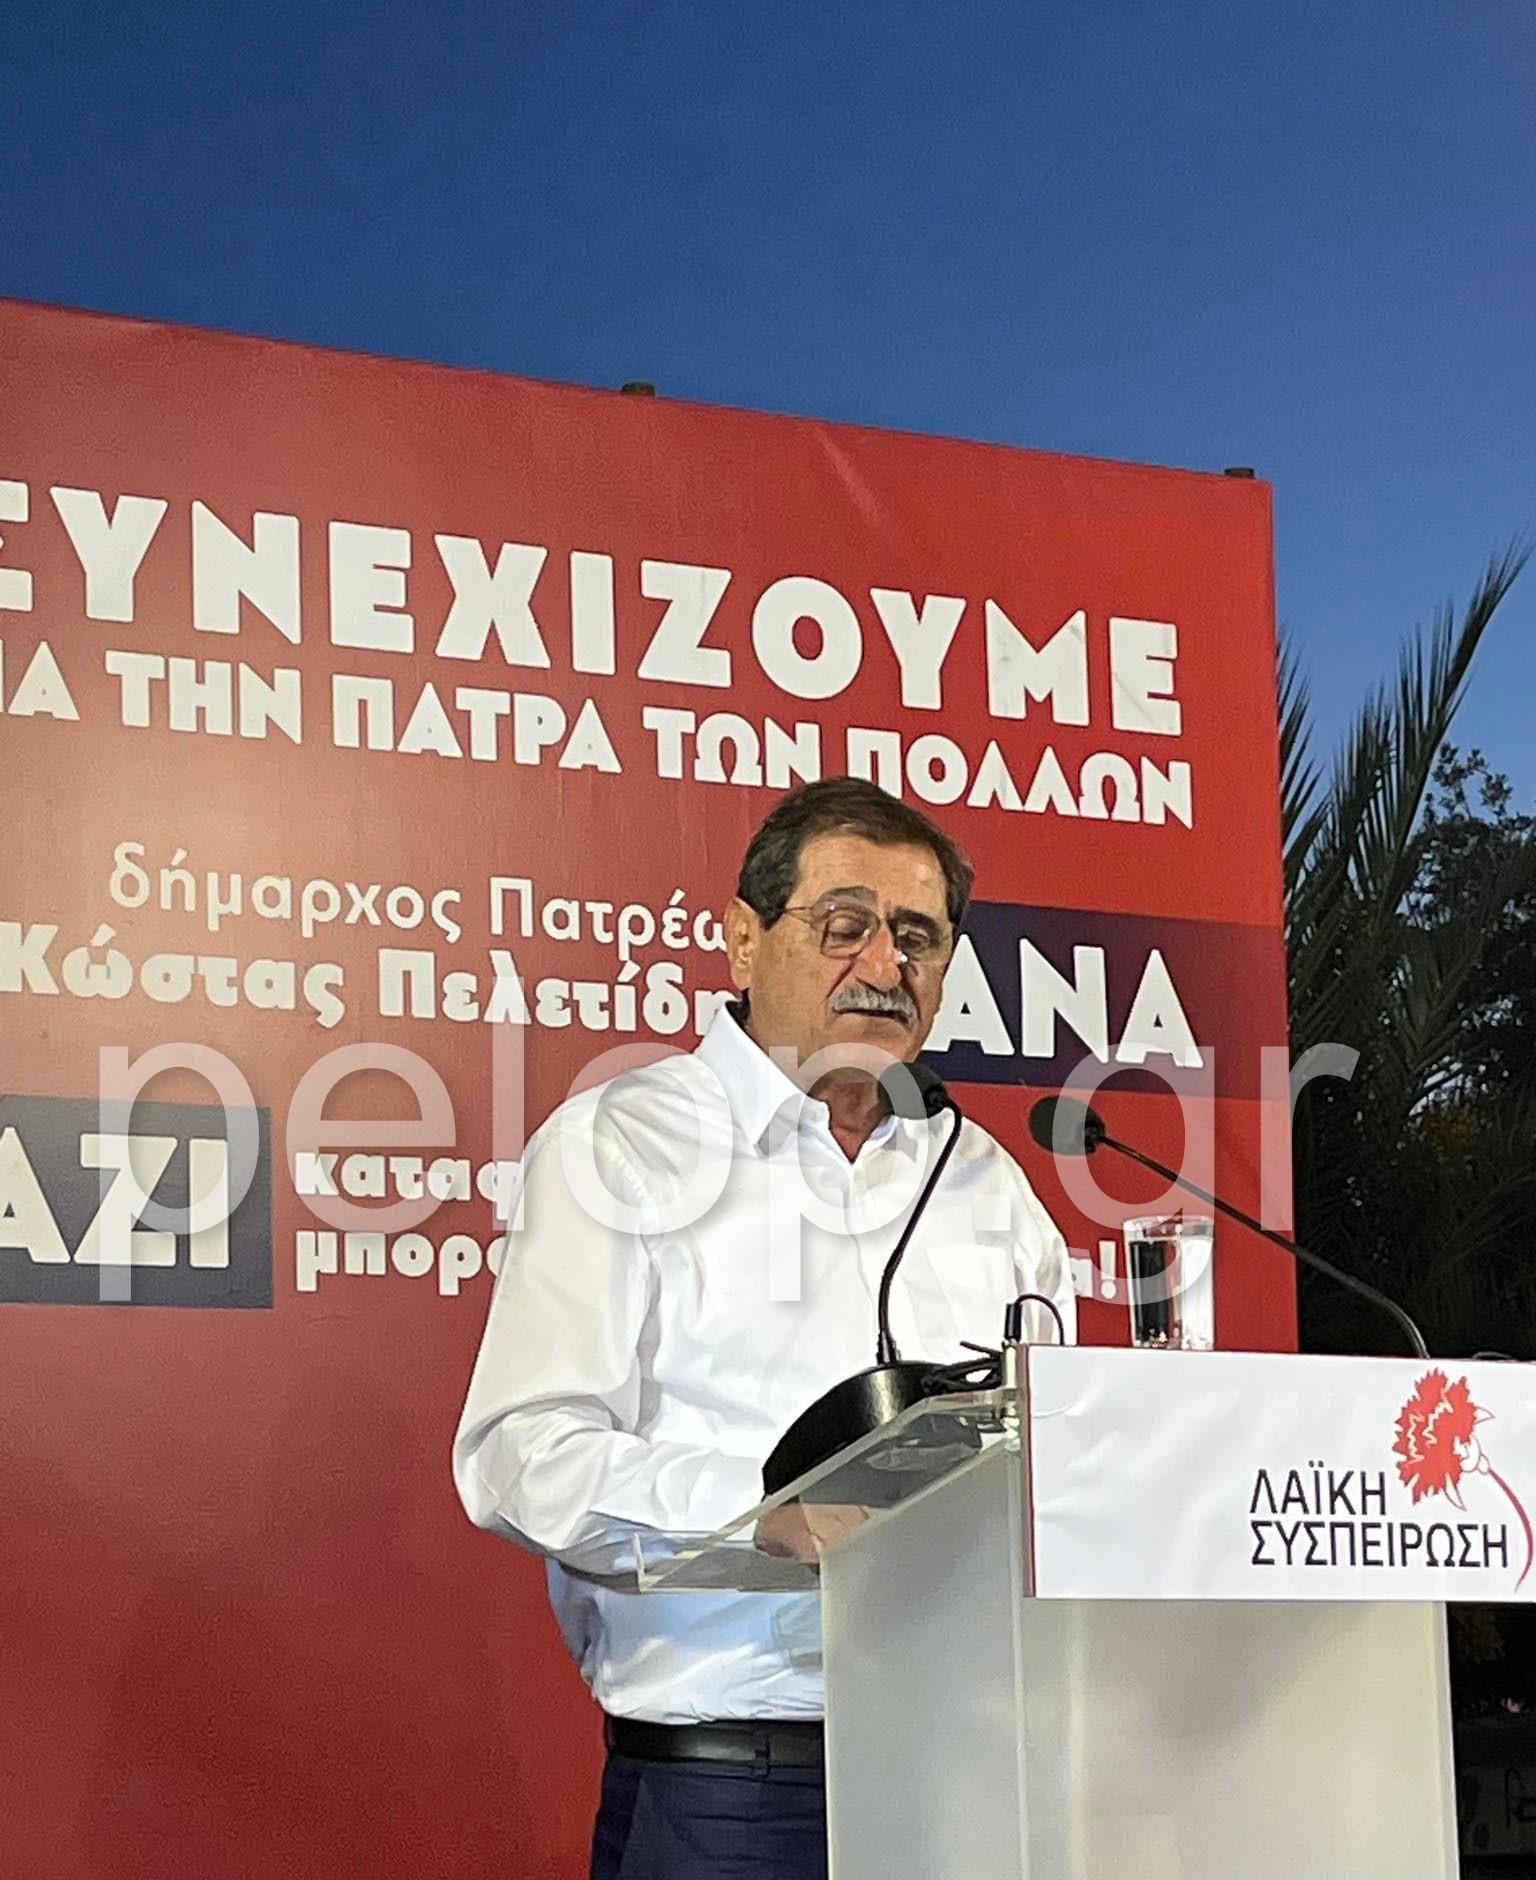 Πάτρα - Πελετίδης: «Καταφέραμε πολλά, μπορούμε περισσότερα» - Η πρώτη μεγάλη συγκέντρωση πριν τις αυτοδιοικητικές εκλογές ΦΩΤΟ - ΒΙΝΤΕΟ